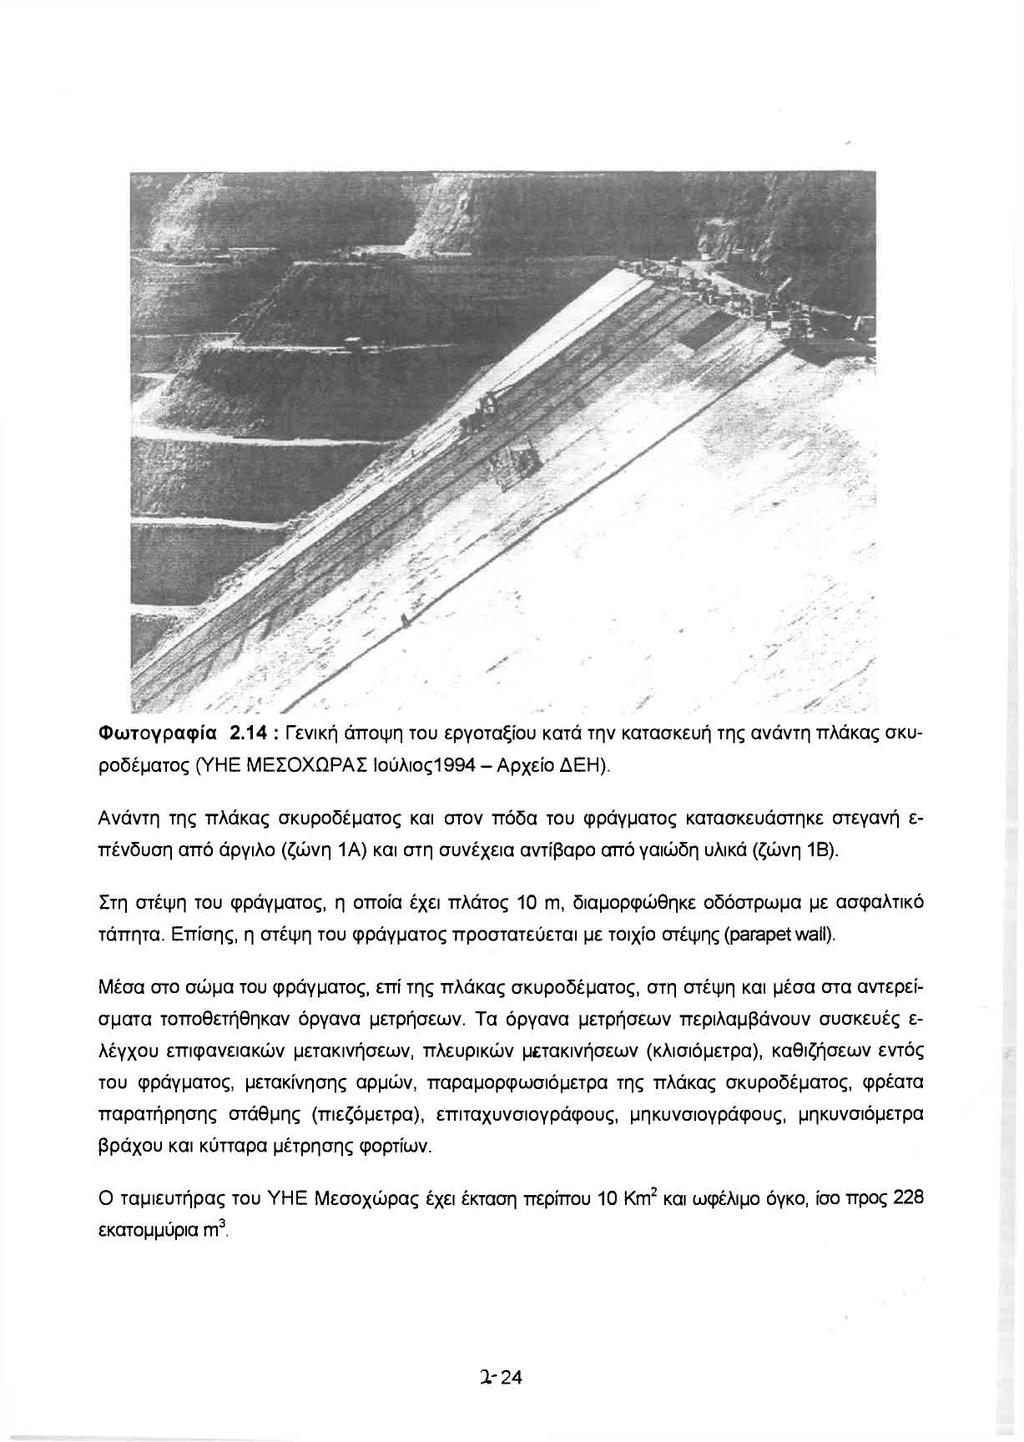 Φωτογραφία 2.14: Γενική άποψη του εργοταξίου κατά την κατασκευή της ανάντη πλάκας σκυροδέματος (ΥΗΕ ΜΕΣΟΧΩΡΑΣ lούλιος1994- Αρχείο ΔΕΗ).